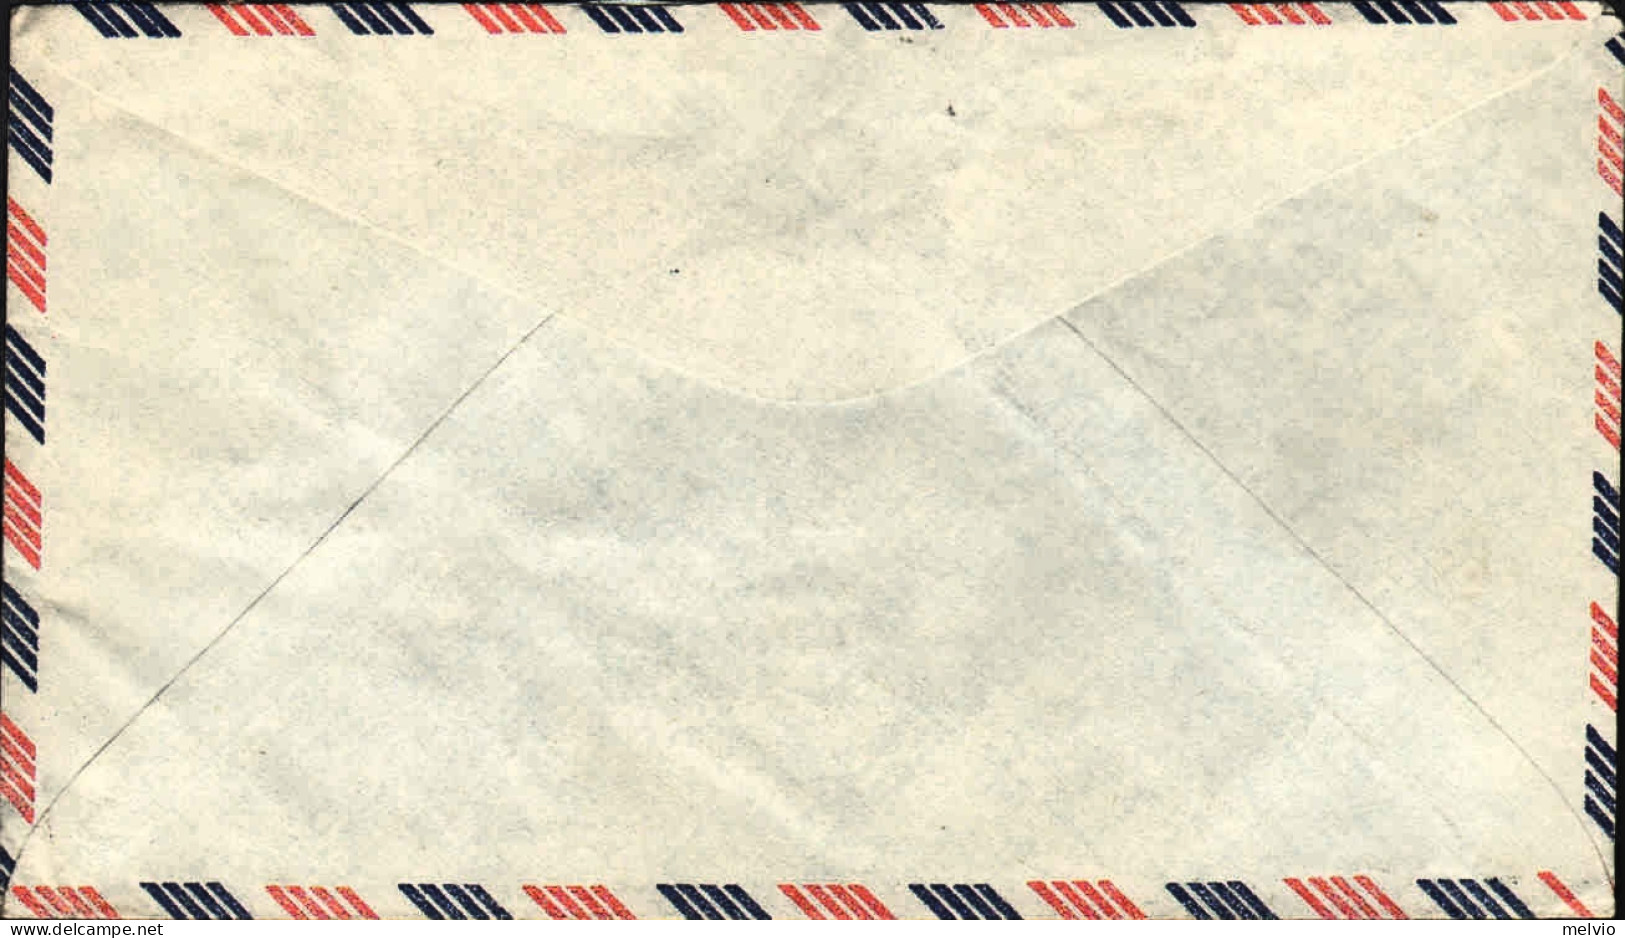 1963-U.S.A. Lettera Con Bella Affrancatura Multicolore Diretta In Germania - Marcophilie